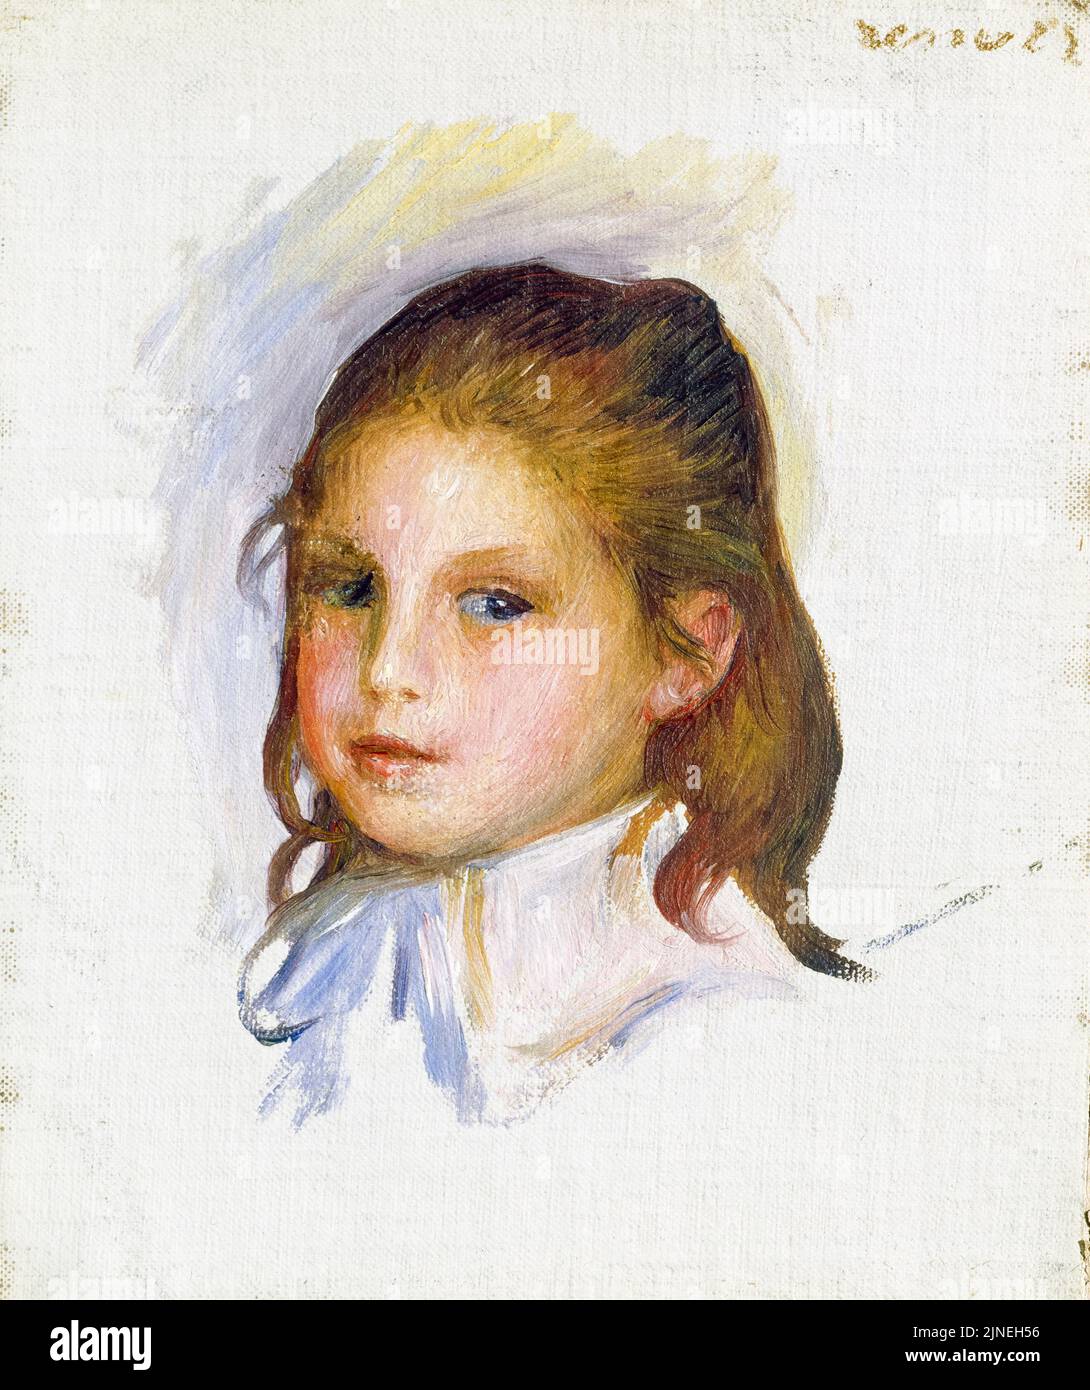 Pierre Auguste Renoir, enfant aux cheveux bruns, peinture à l'huile sur toile, 1887-1888 Banque D'Images